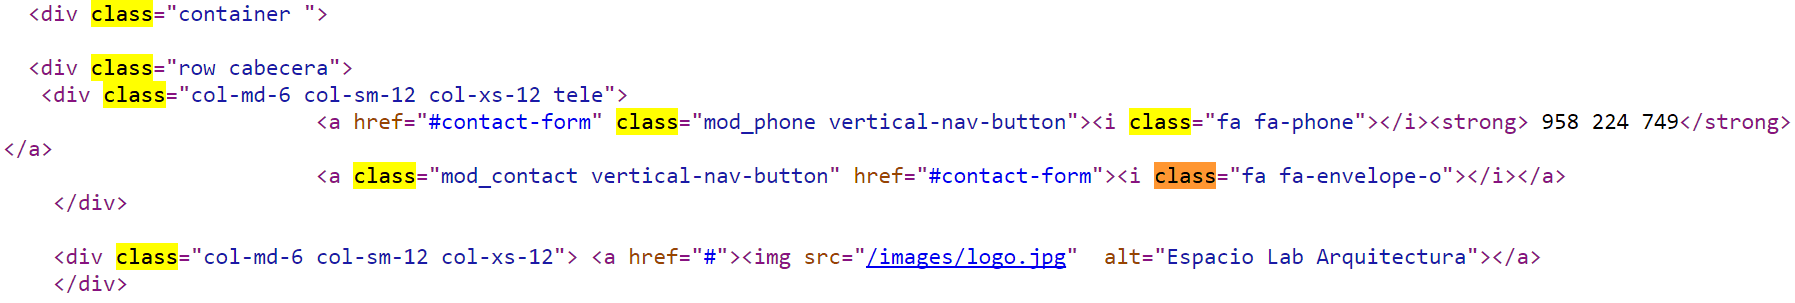 Ejemplo de class dentro del html